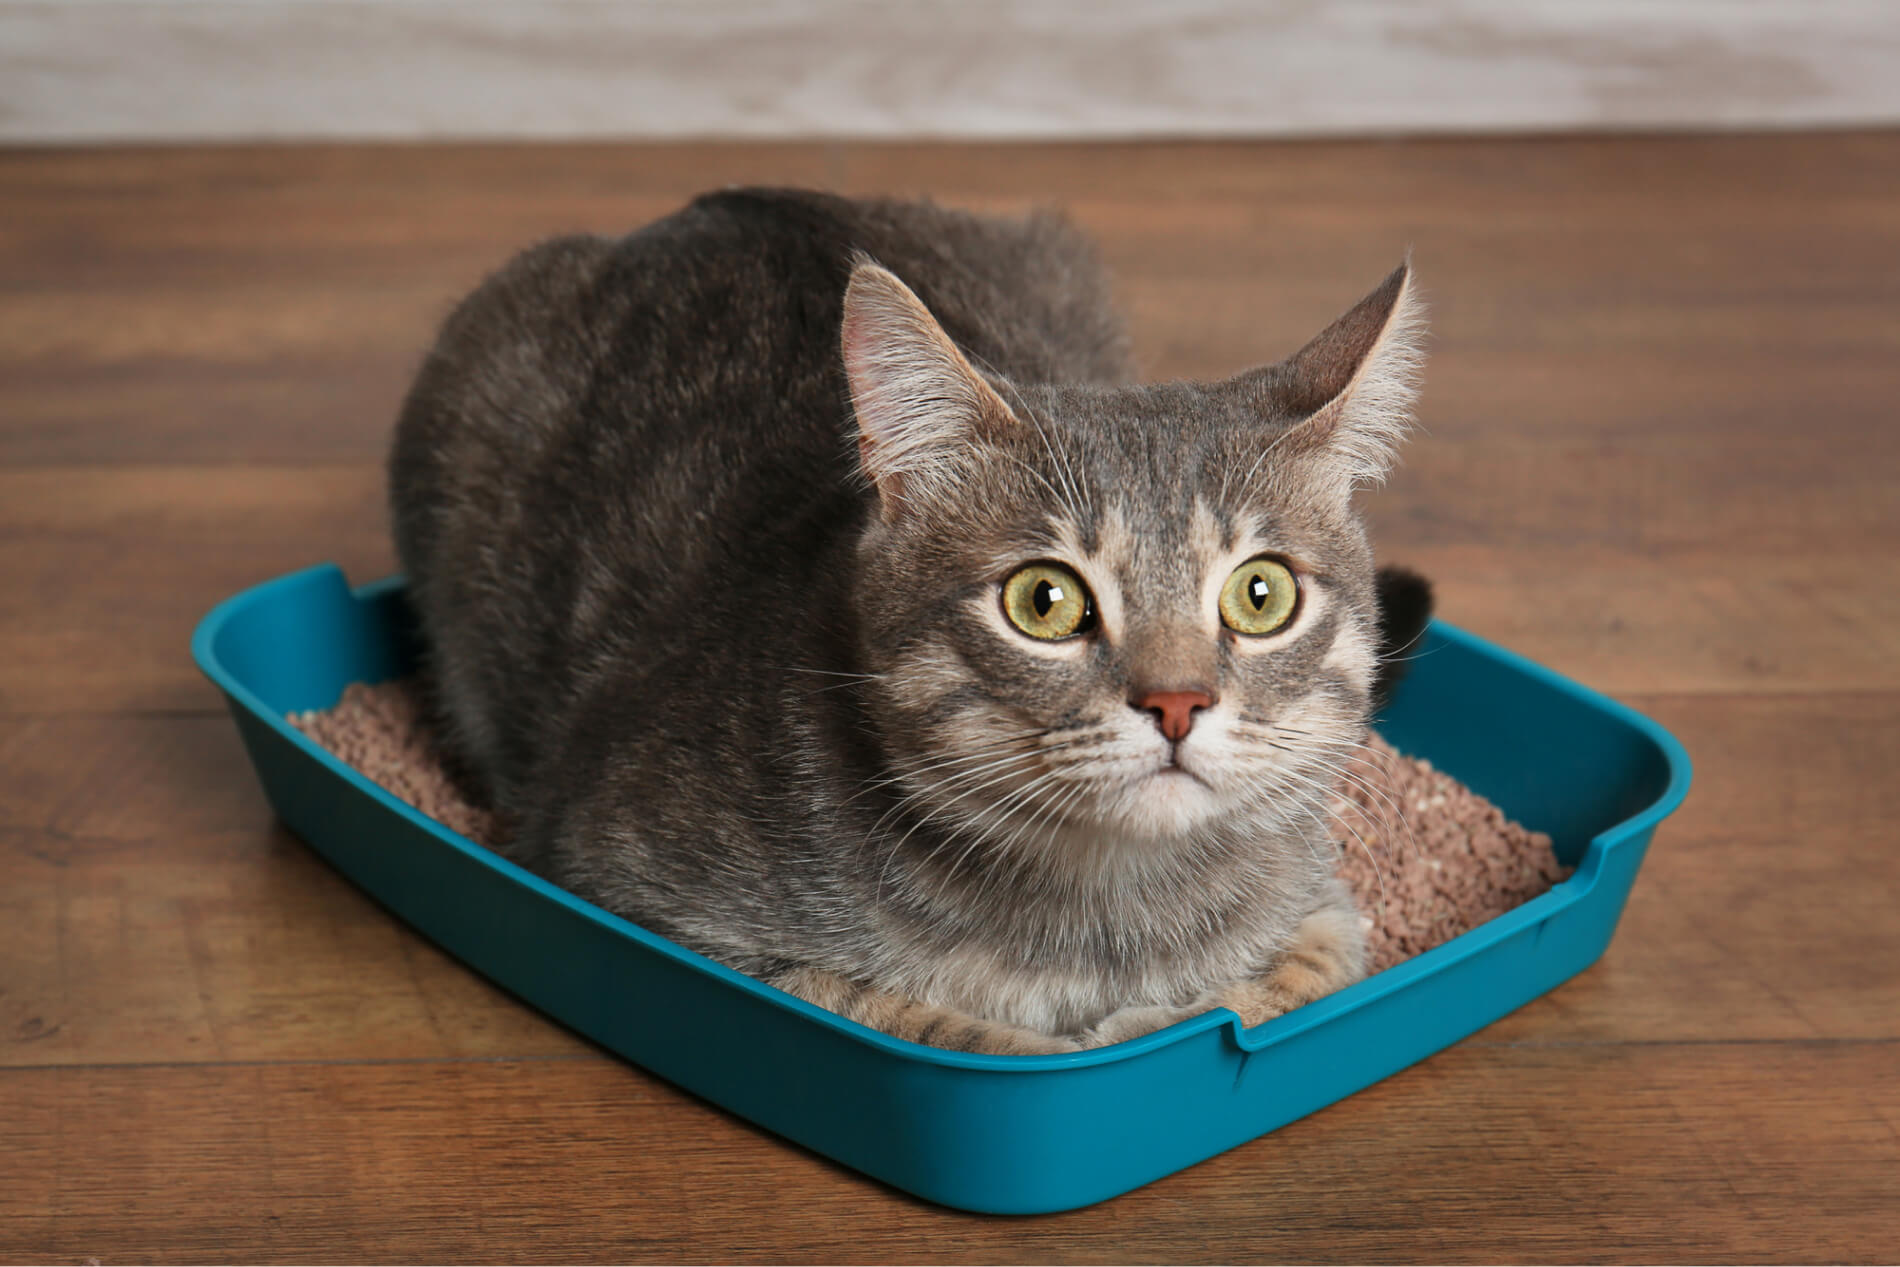 Kat eet kattenbakvulling: oorzaken, risico's en tegenmaatregelen